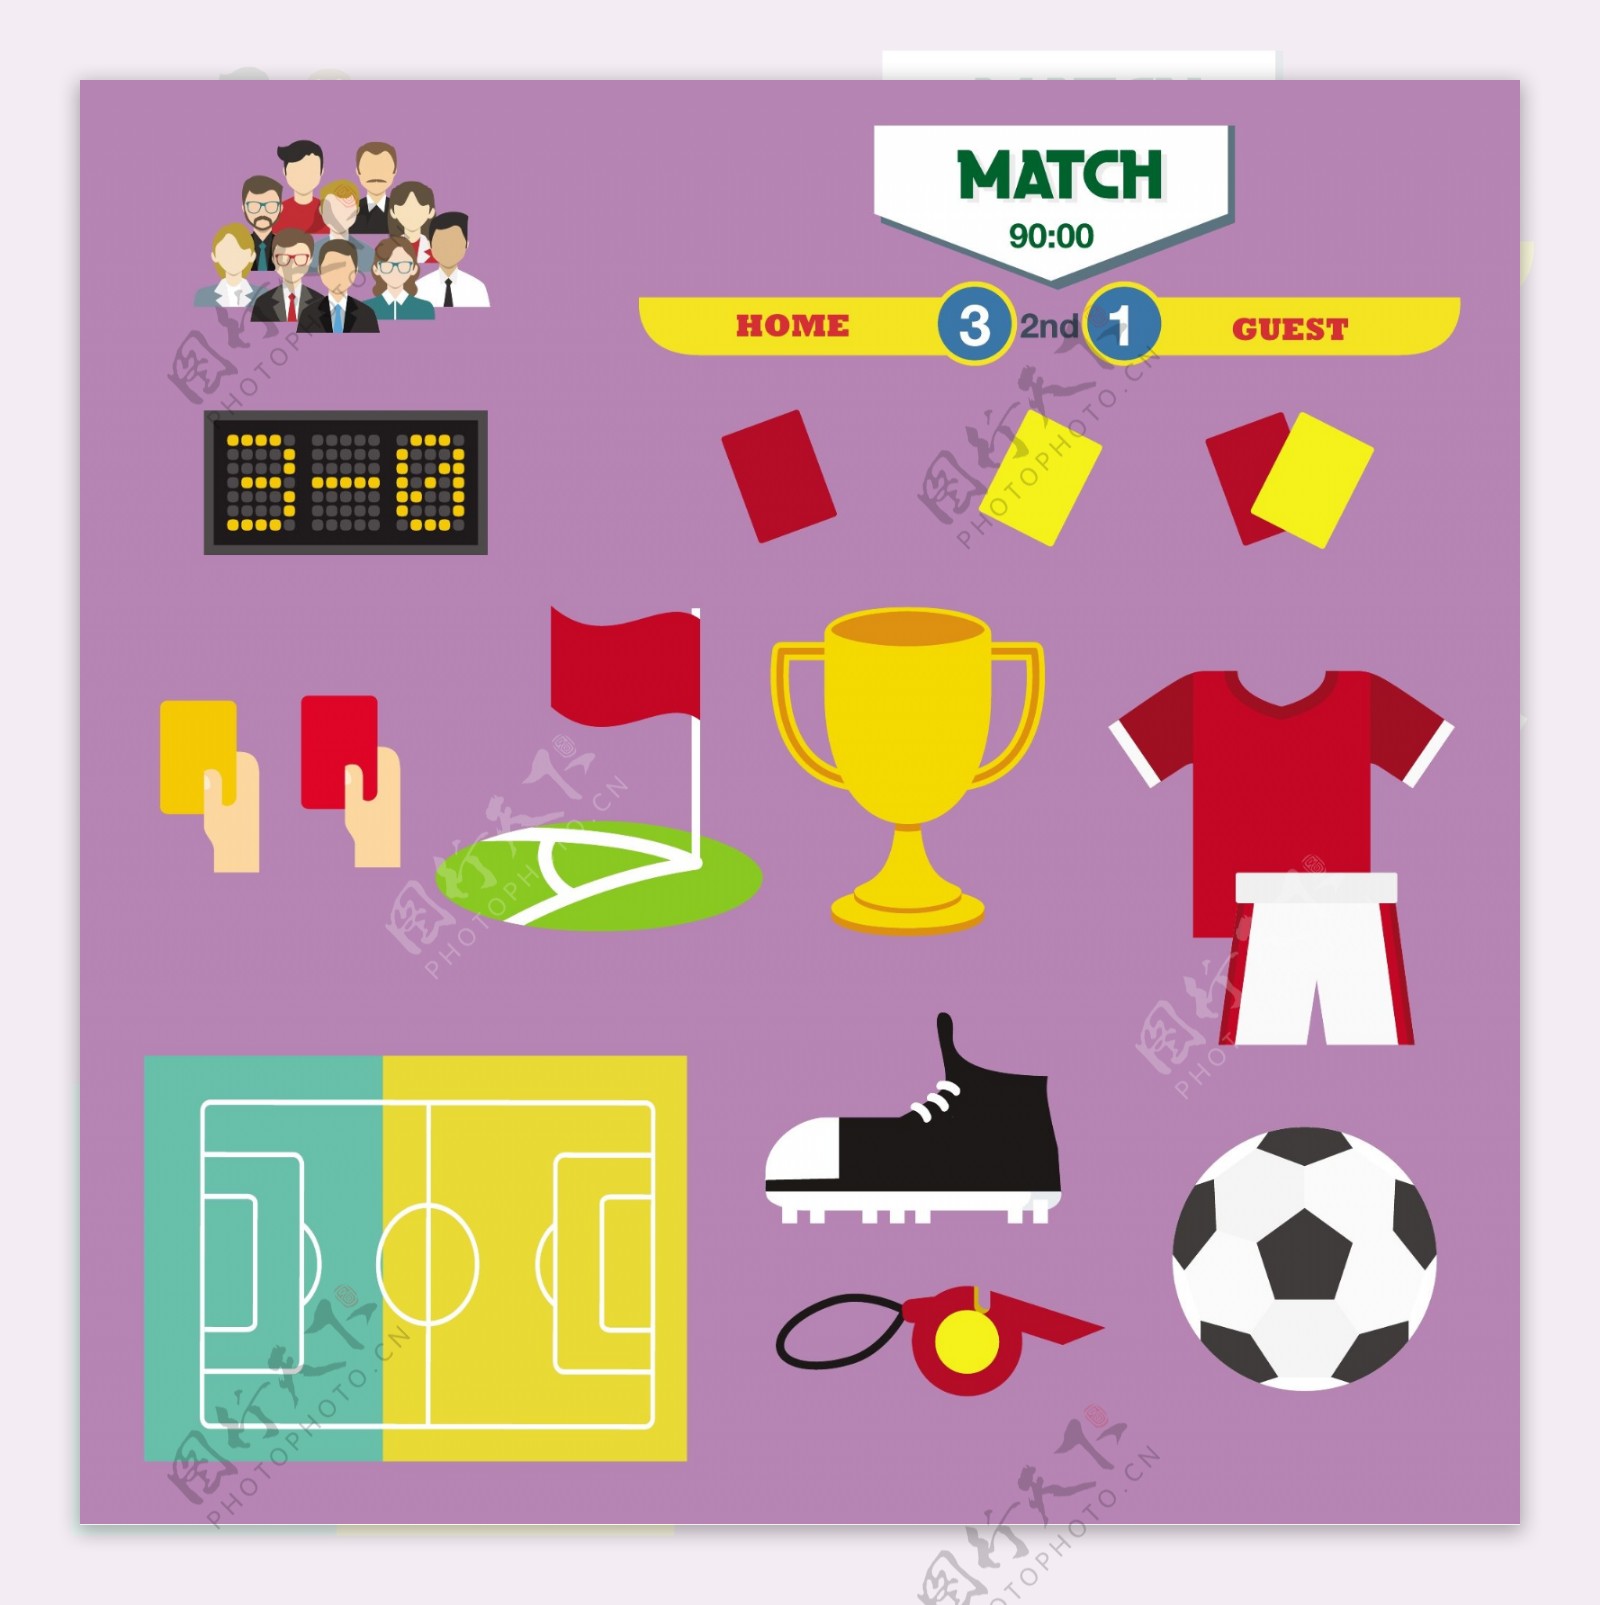 足球象征设计元素与各种颜色的风格自由向量